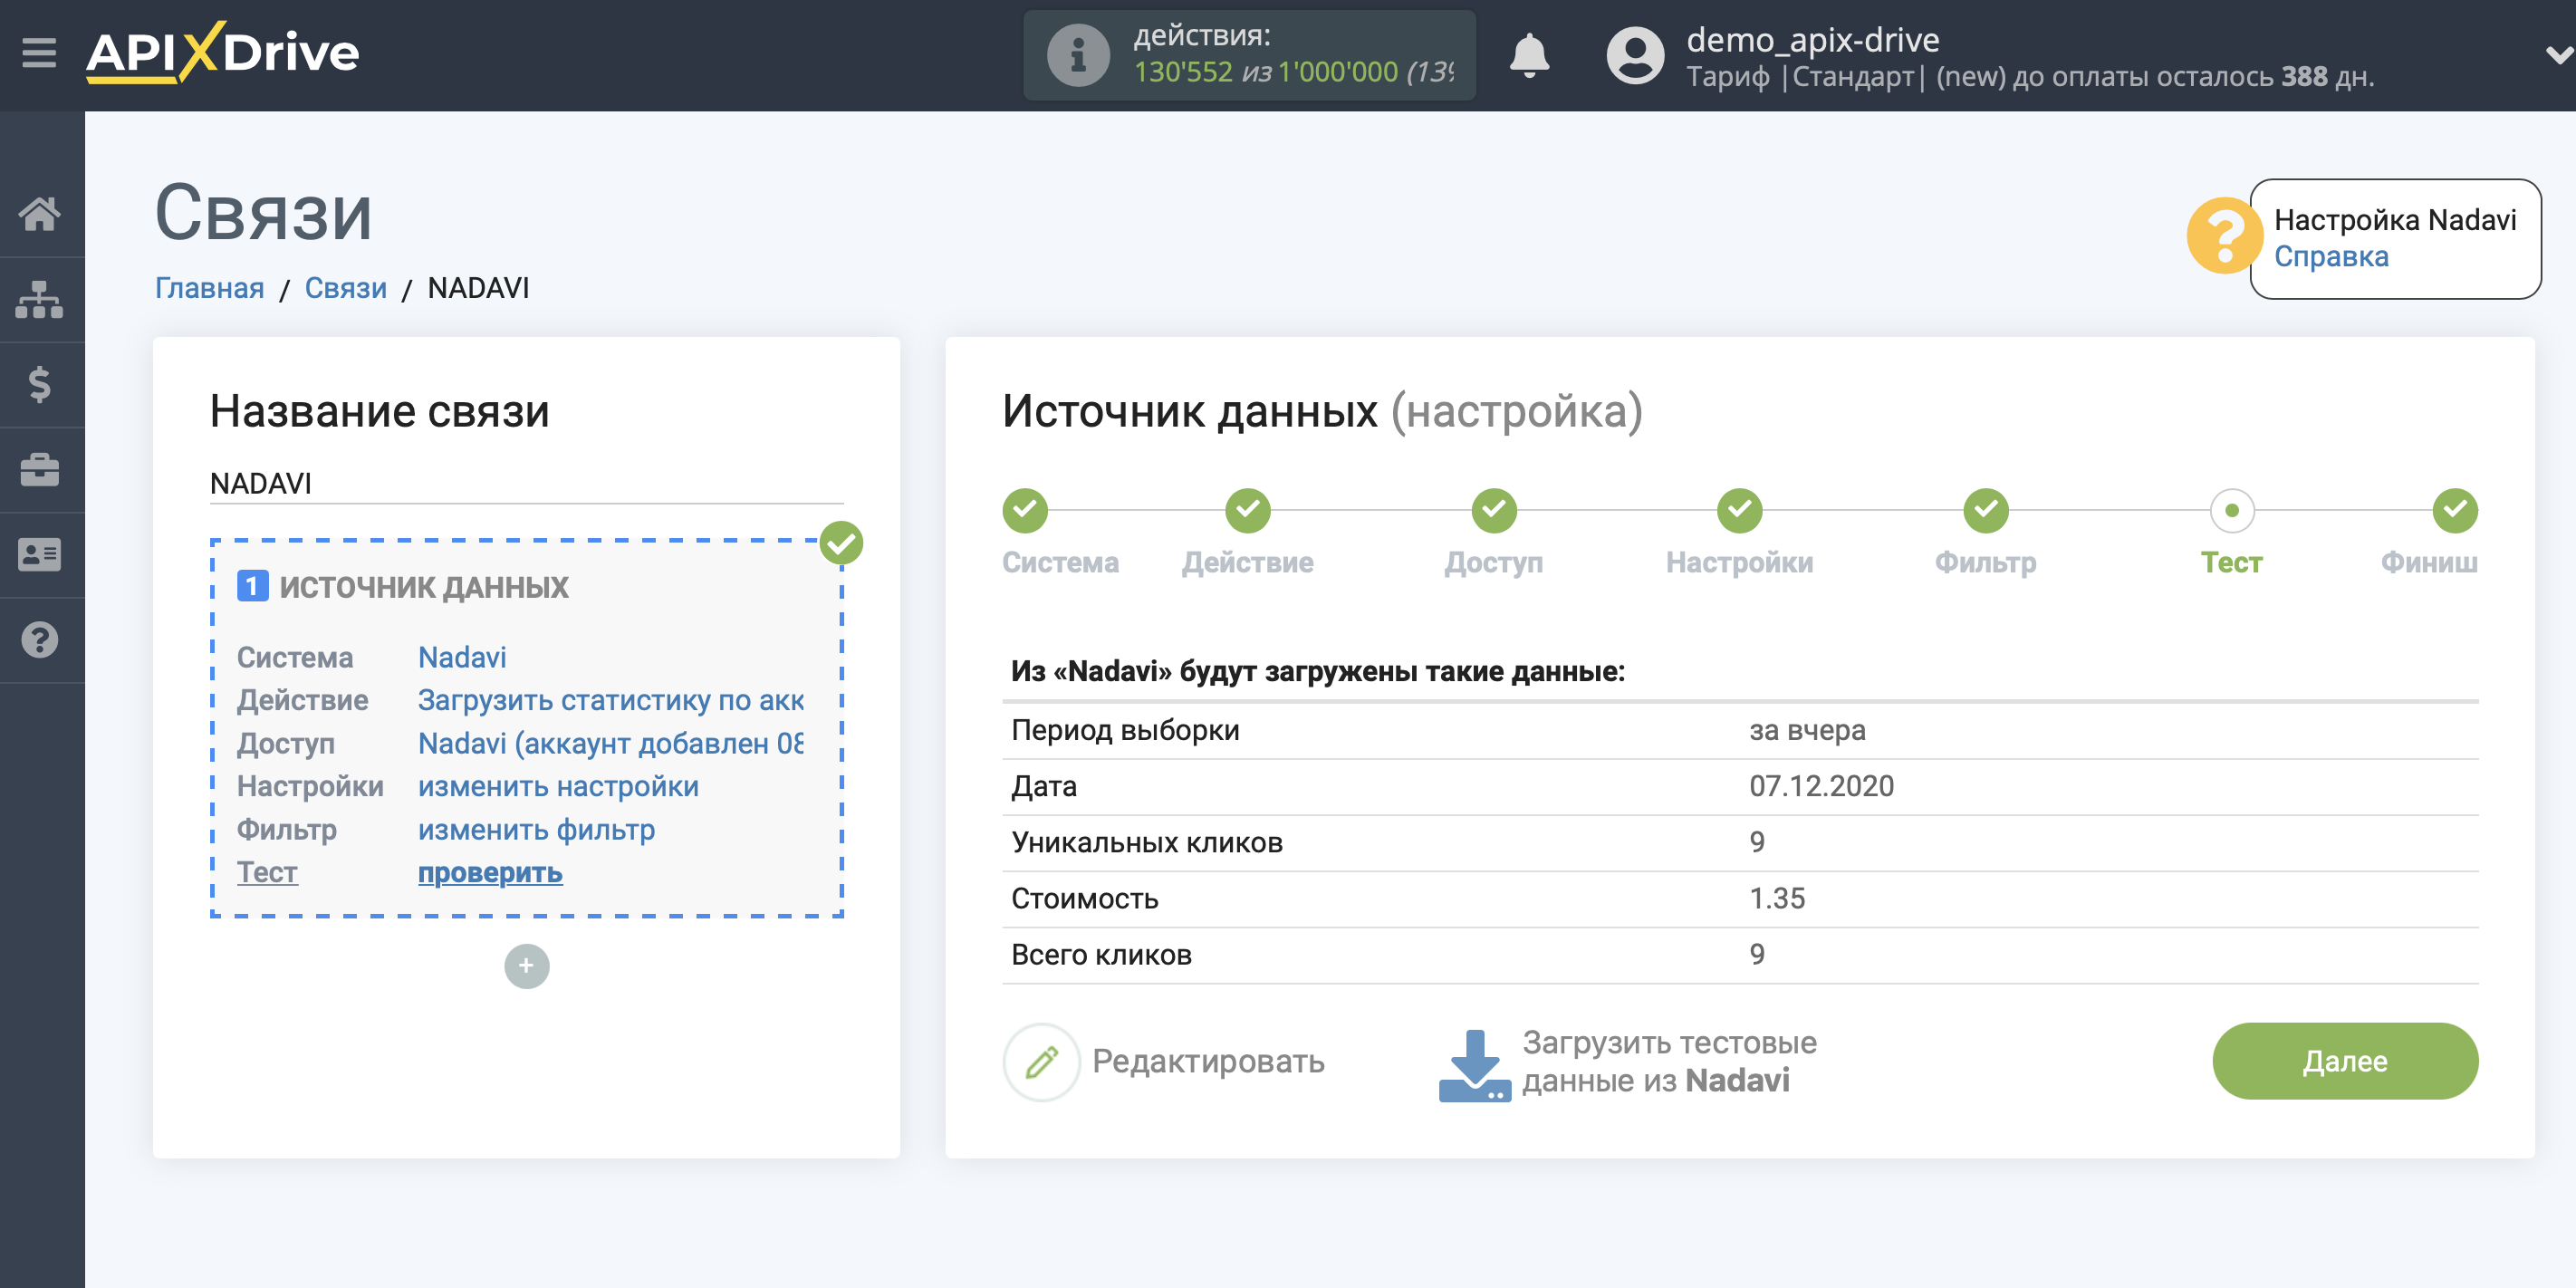 Импорт данных по расходам из Nadavi в Яндекс.Метрику | Тестовые данные